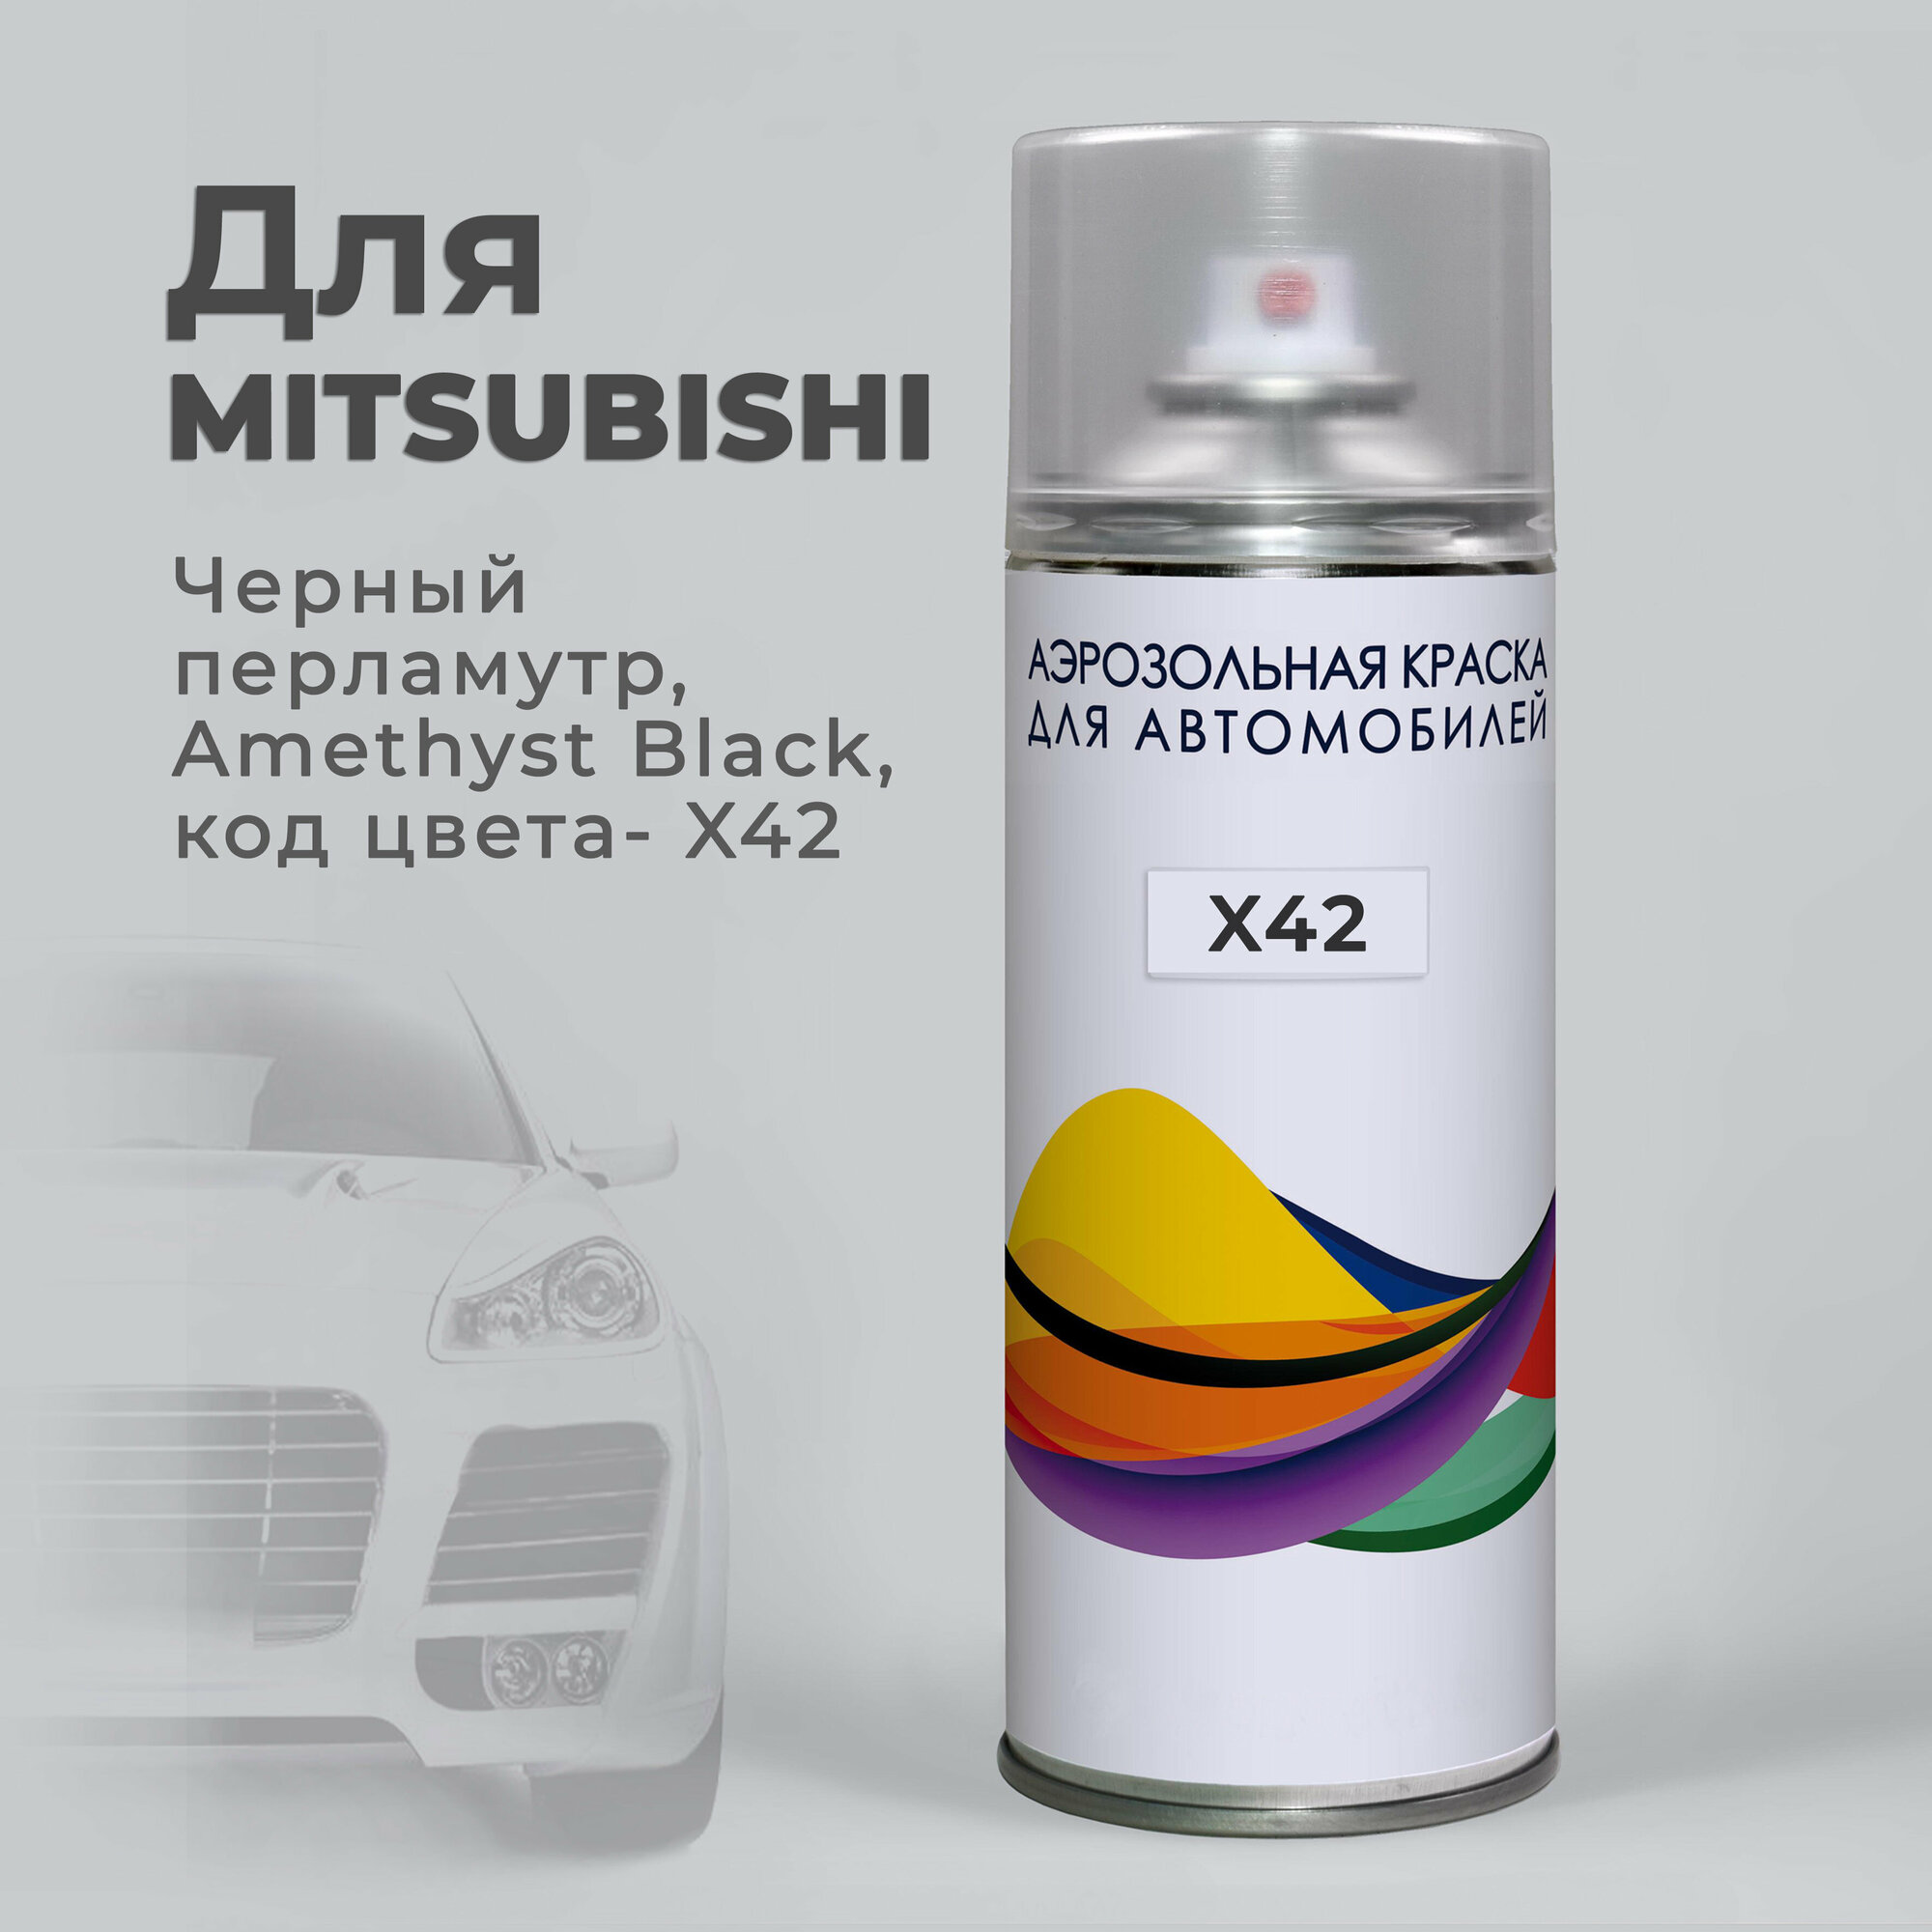 Краска аэрозольная для авто по коду X42 для Mitsubishi черный перламутр Amethyst Black / Аэрозольный баллон 400 мл